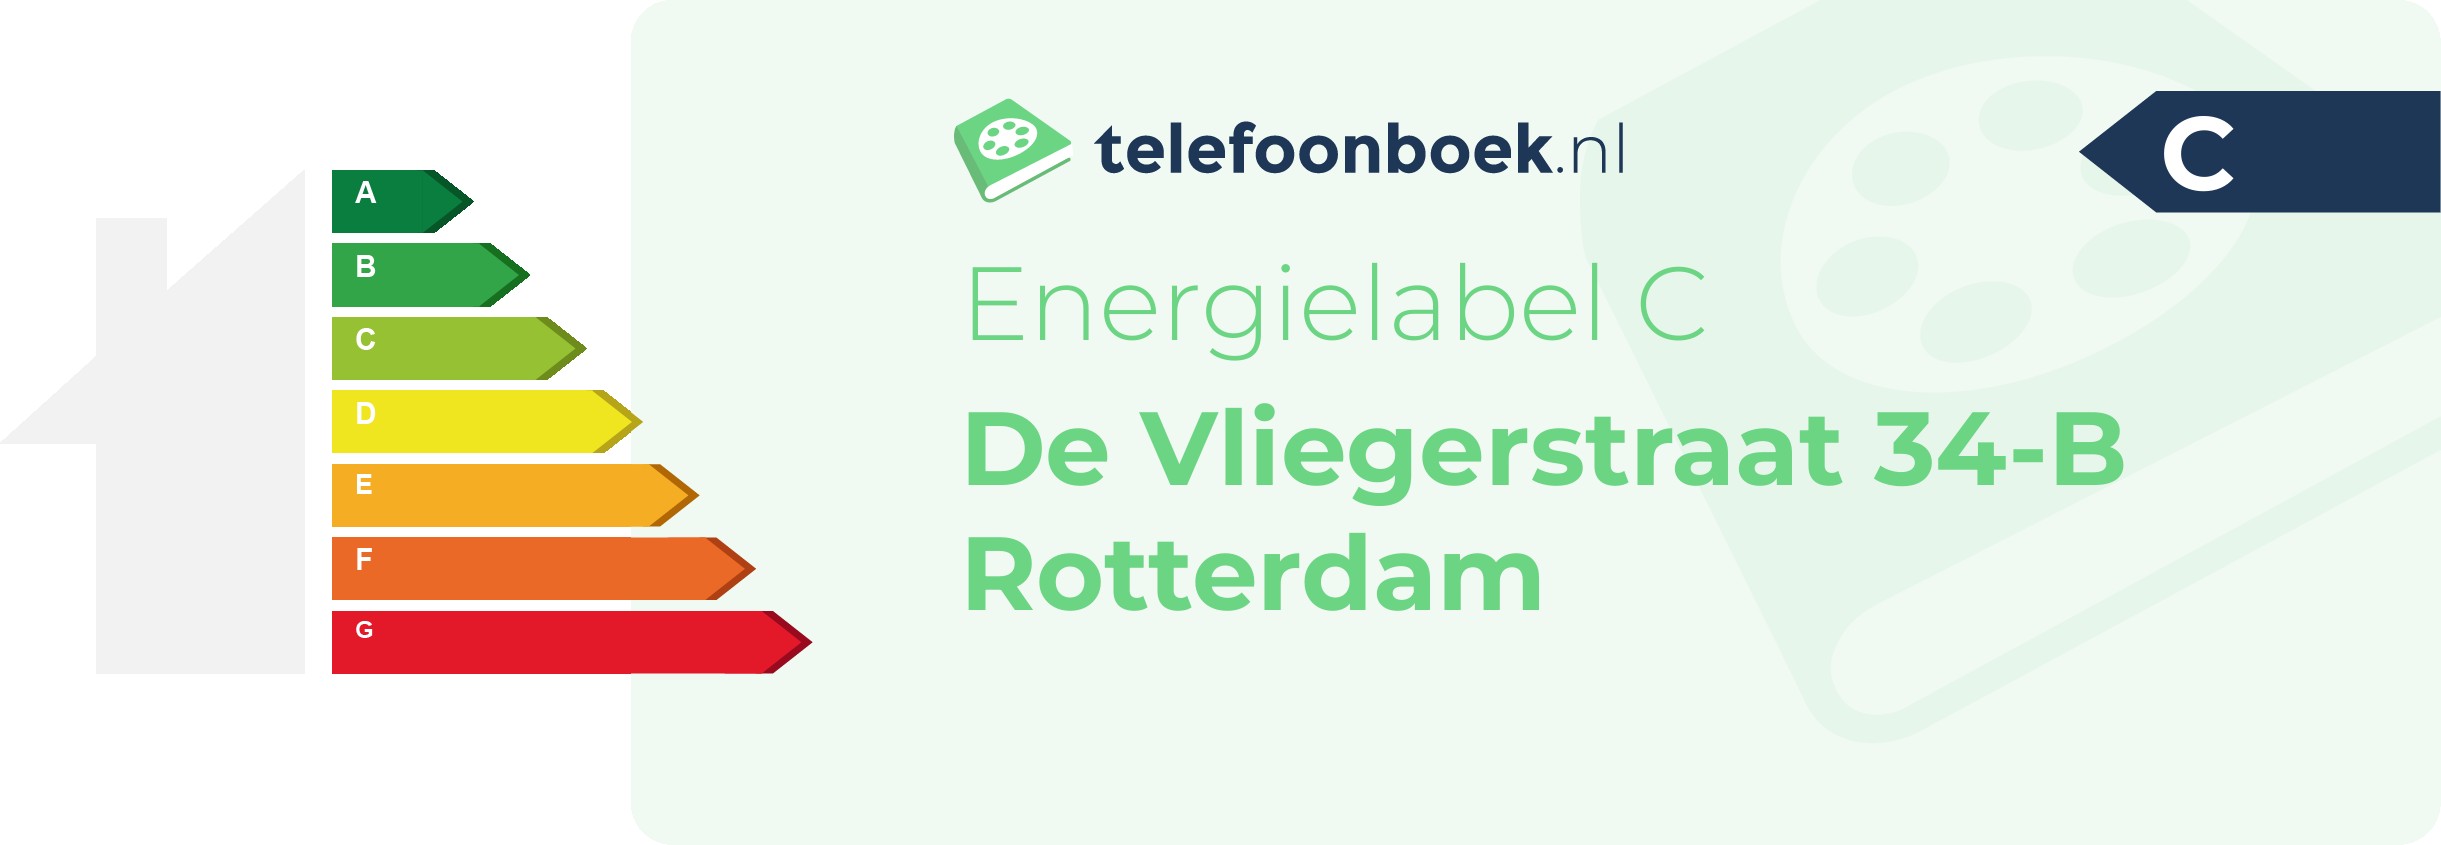 Energielabel De Vliegerstraat 34-B Rotterdam